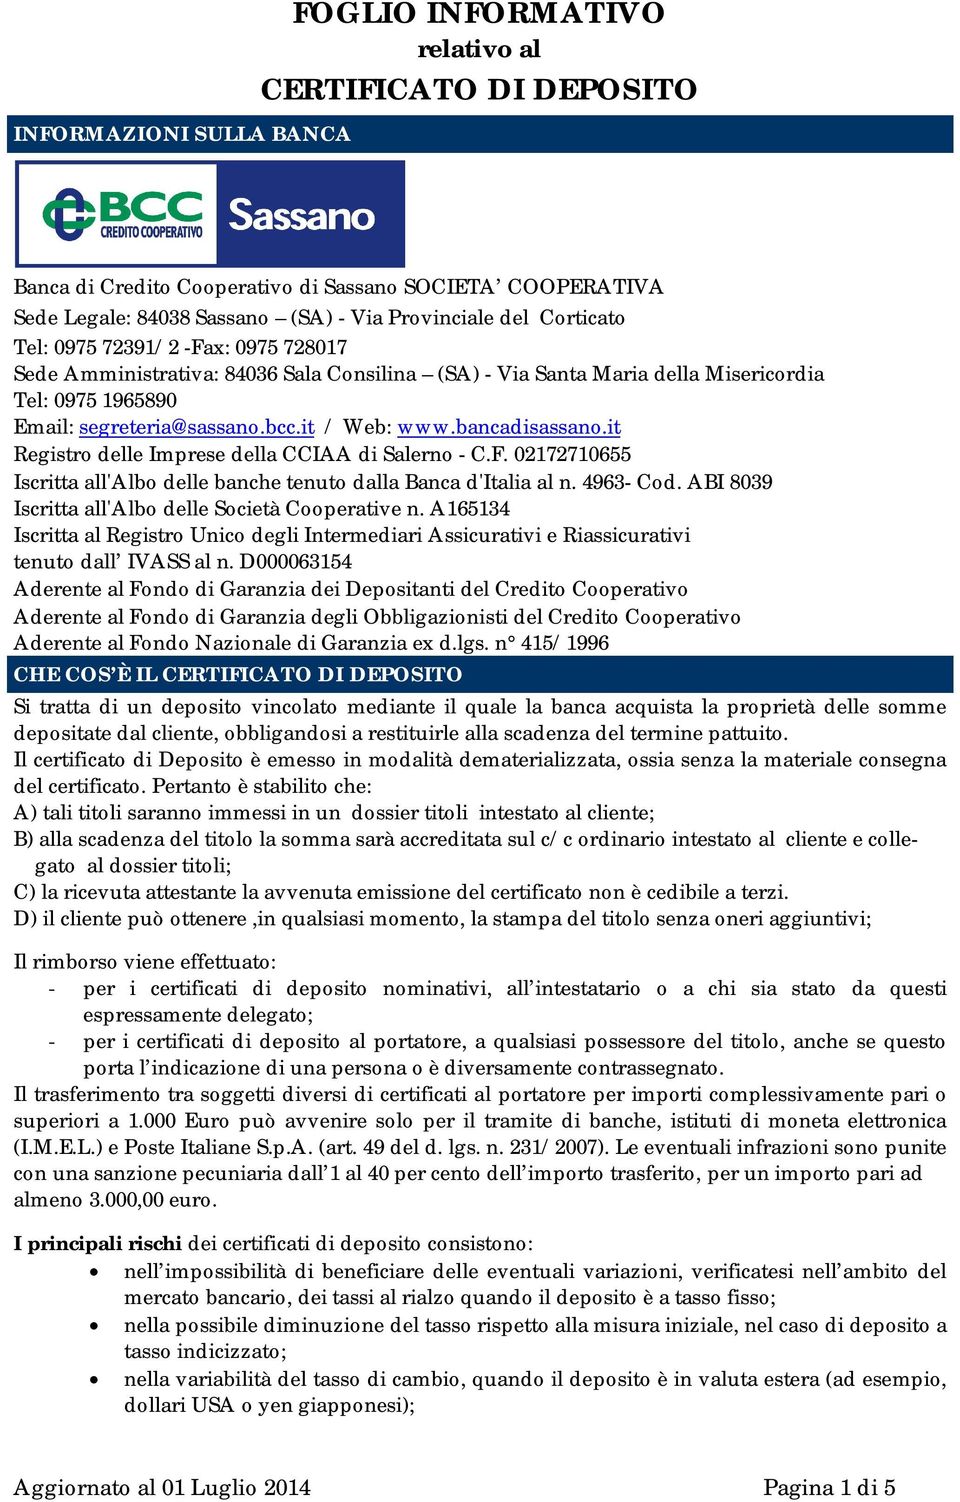 bancadisassano.it Registro delle Imprese della CCIAA di Salerno - C.F. 02172710655 Iscritta all'albo delle banche tenuto dalla Banca d'italia al n. 4963- Cod.